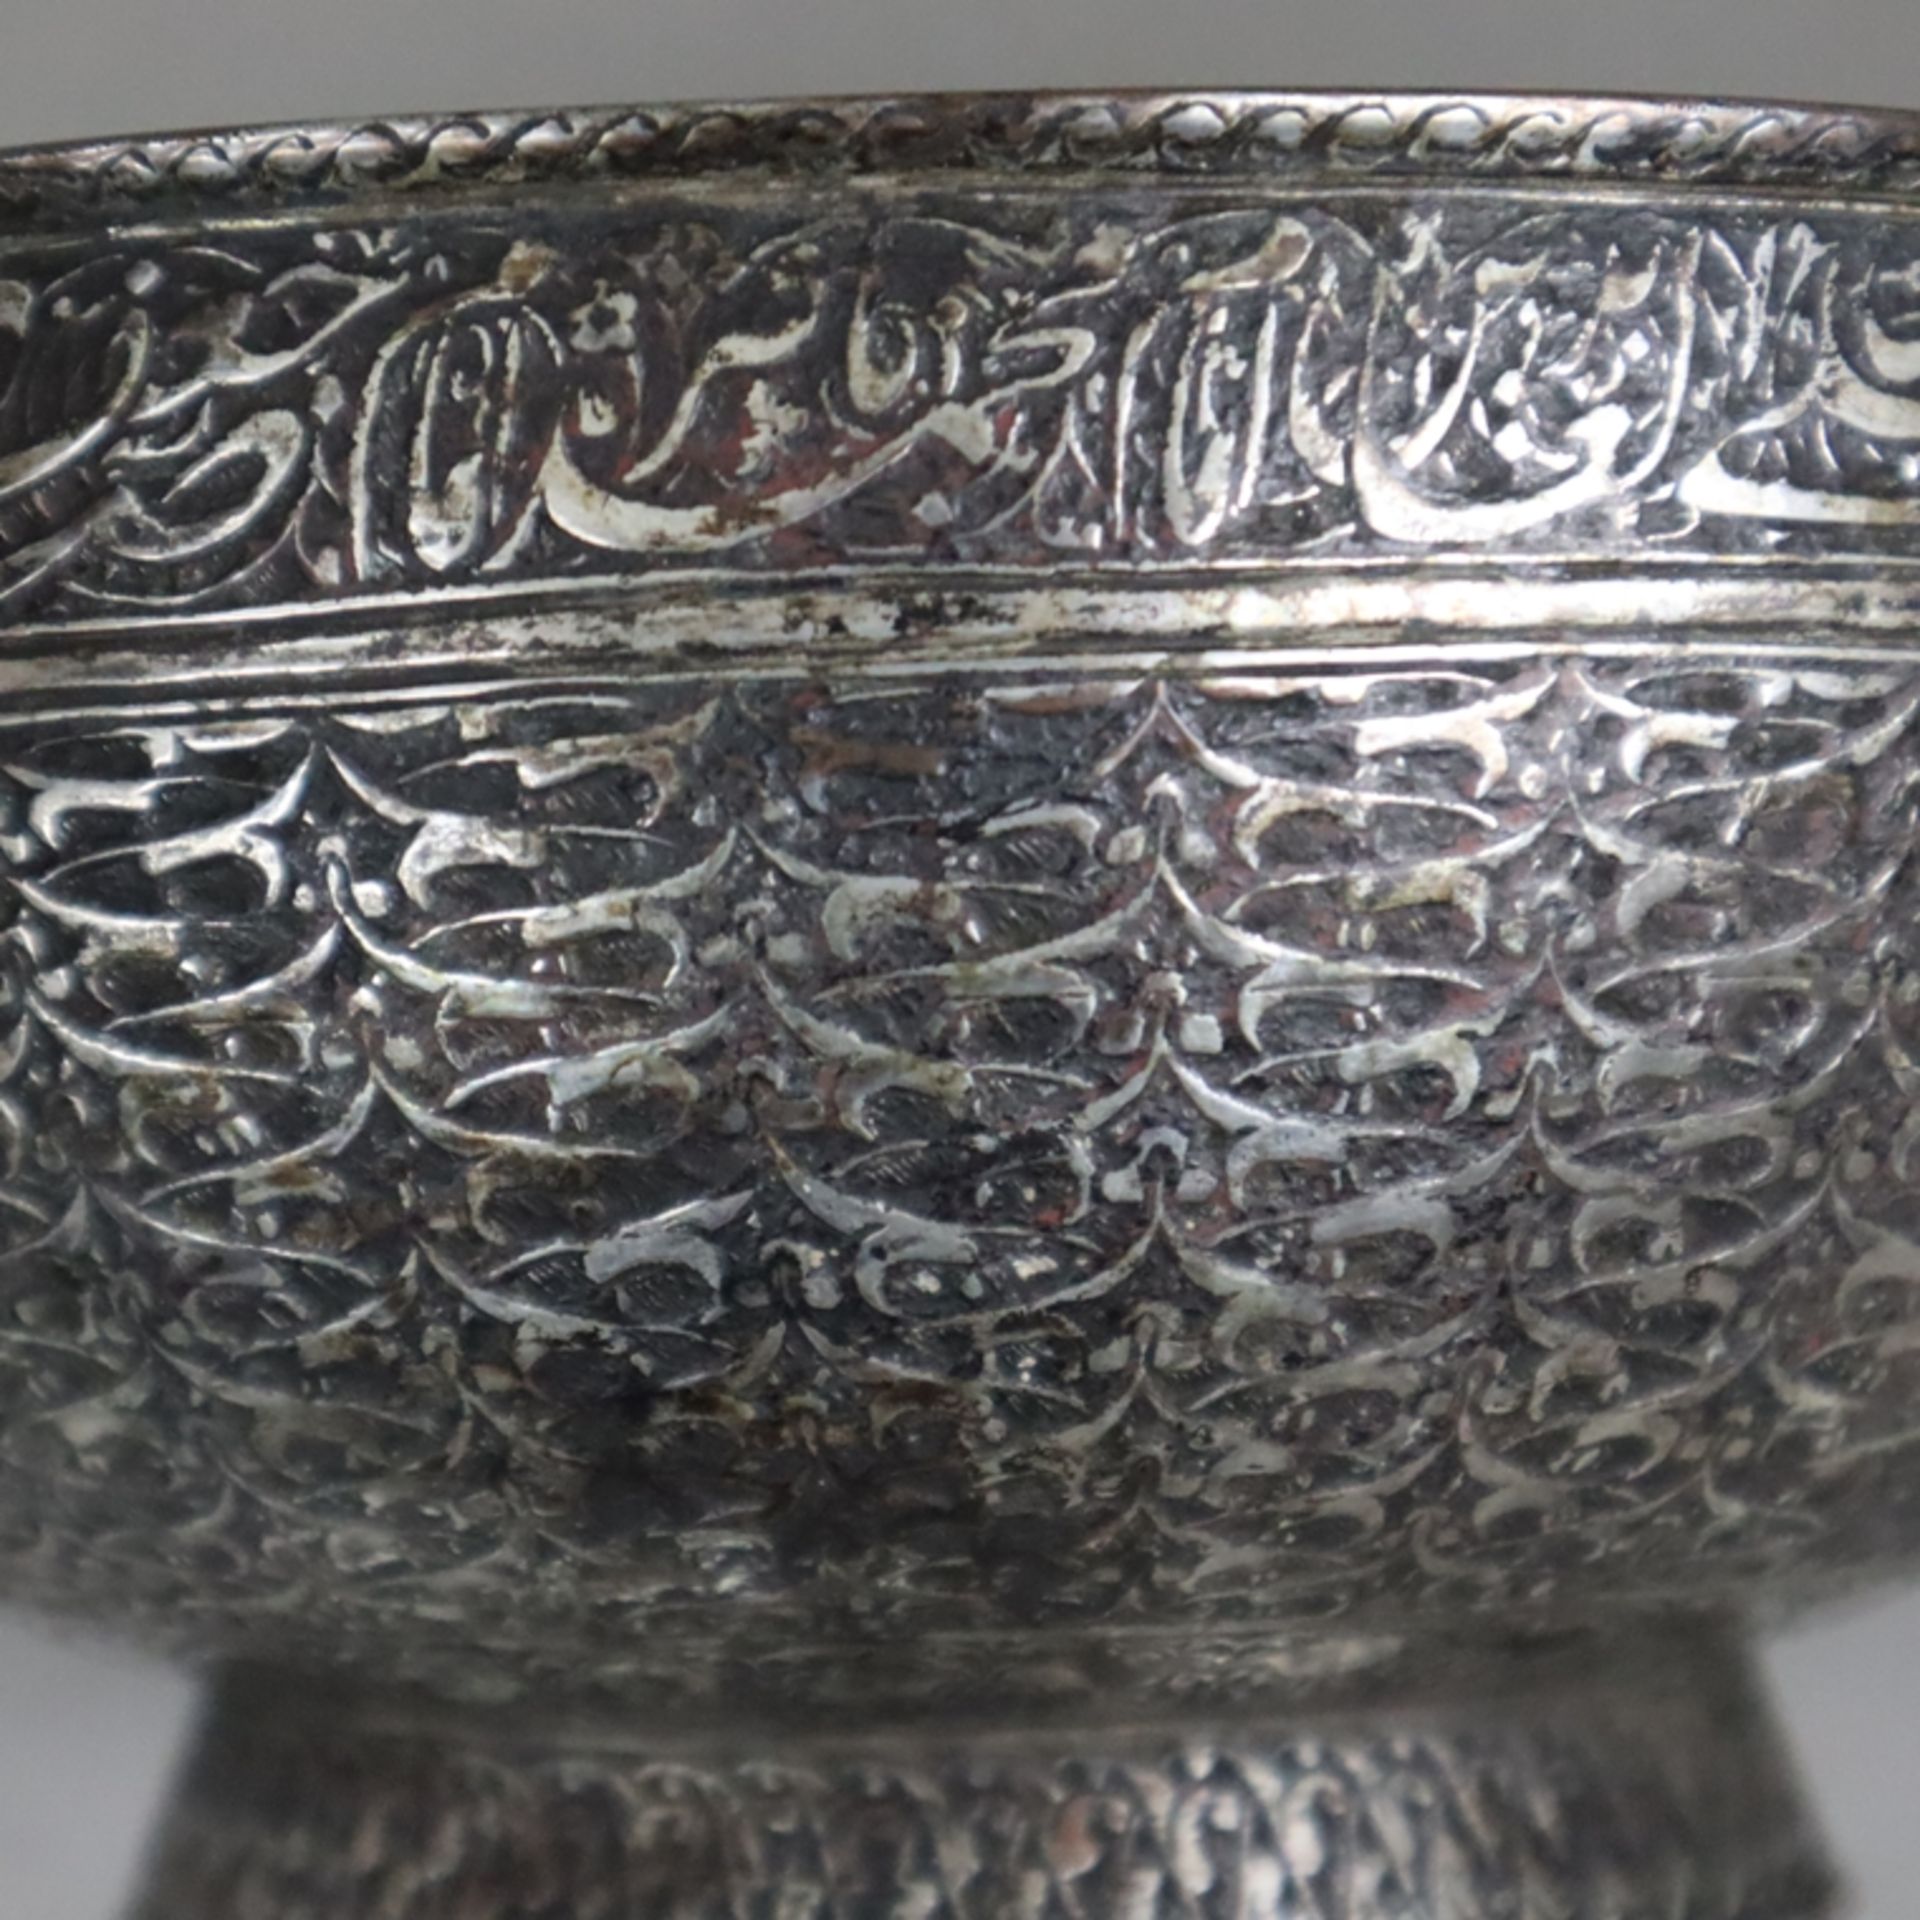 Reich verzierte Schale - Persien, späte Safawiden-Zeit, Kupferlegierung, verzinnt, eventuell versil - Bild 3 aus 9